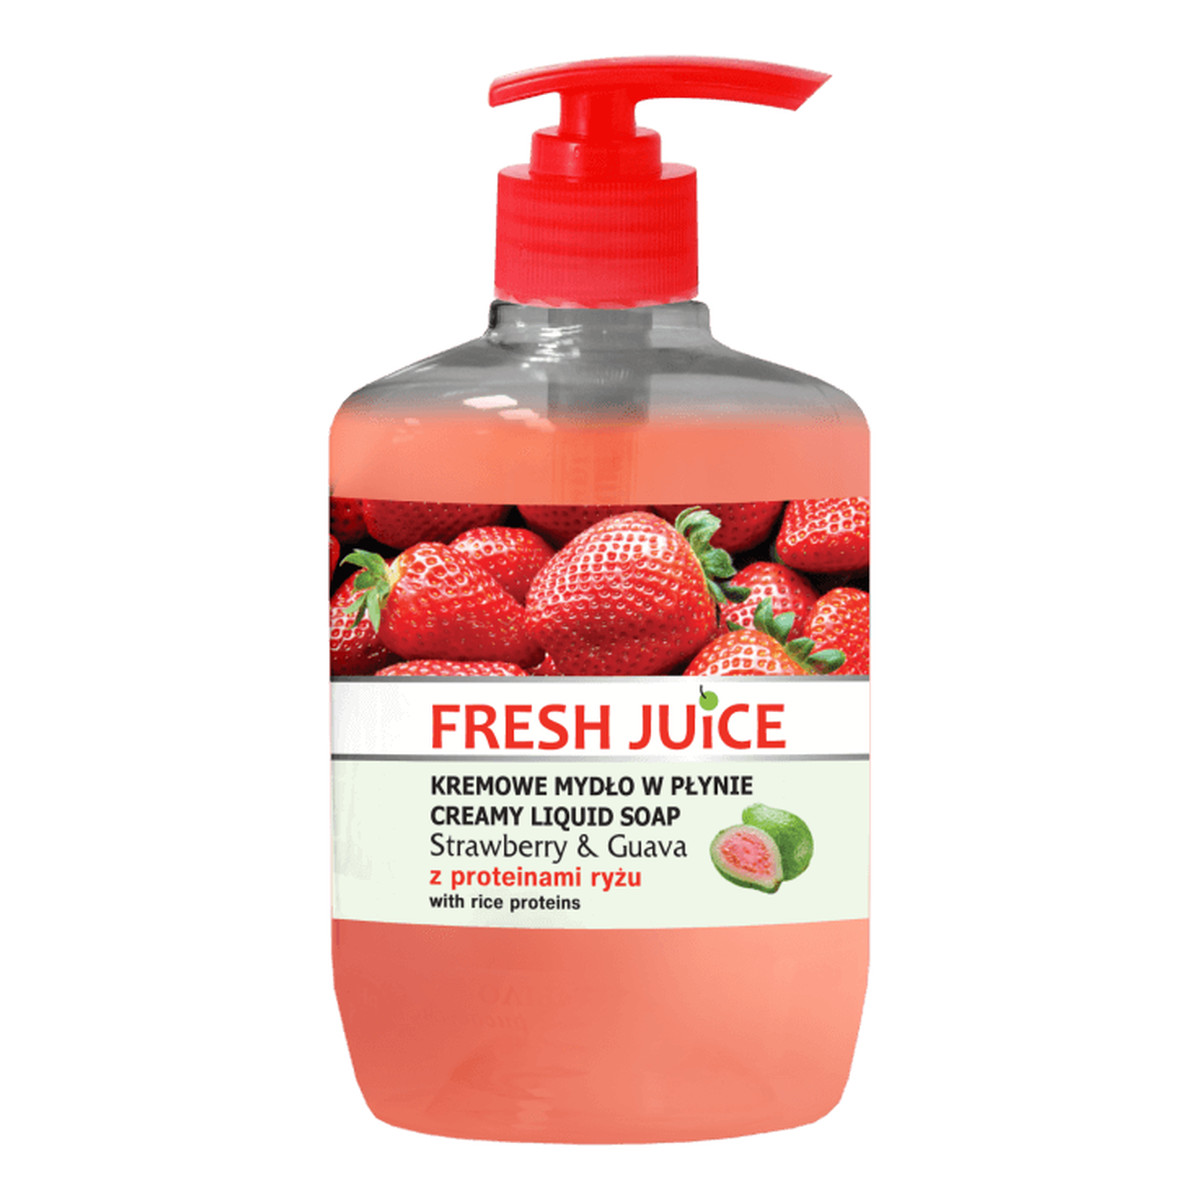 Fresh Juice Strawberry & Guava Kremowe mydło z proteinami ryżu 460ml